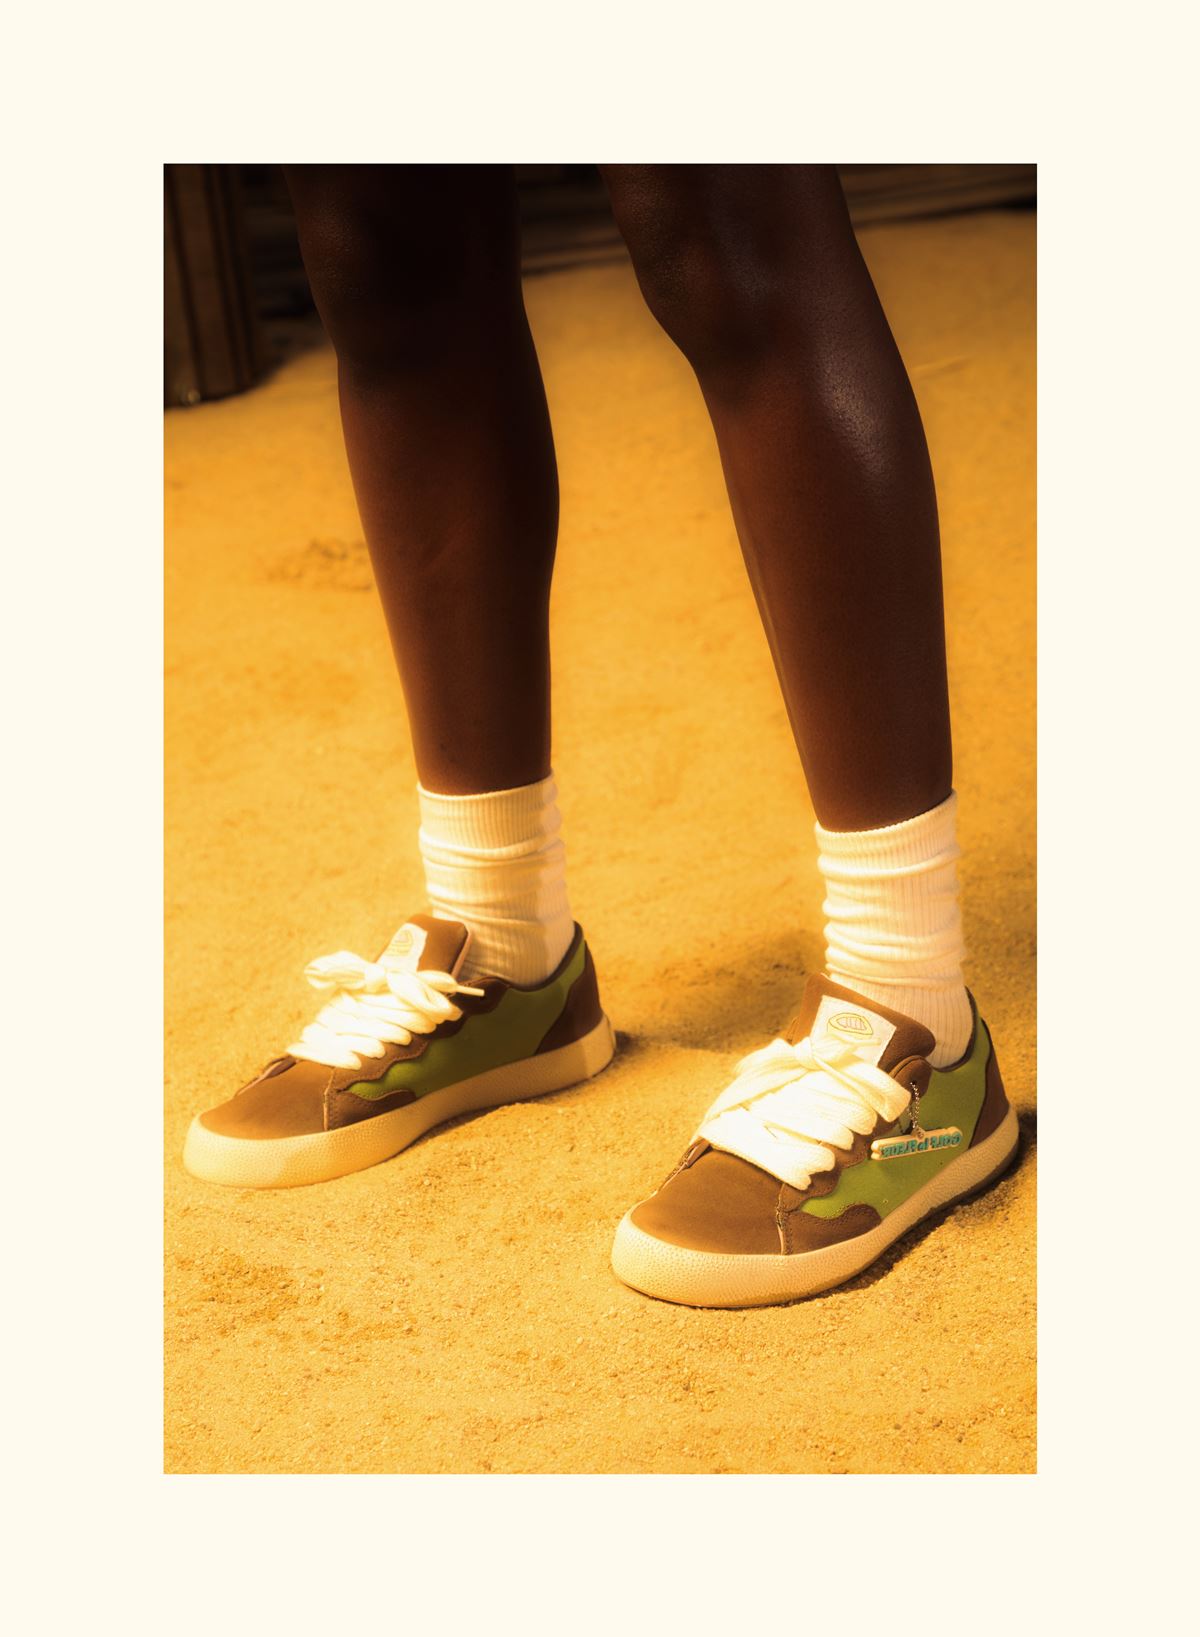 Pessoa negra usa um tênis da marca Converse. Na foto é possível ver apenas as pernas da pessoa. Ela usa o tênis e uma meia branca. - Metrópoles